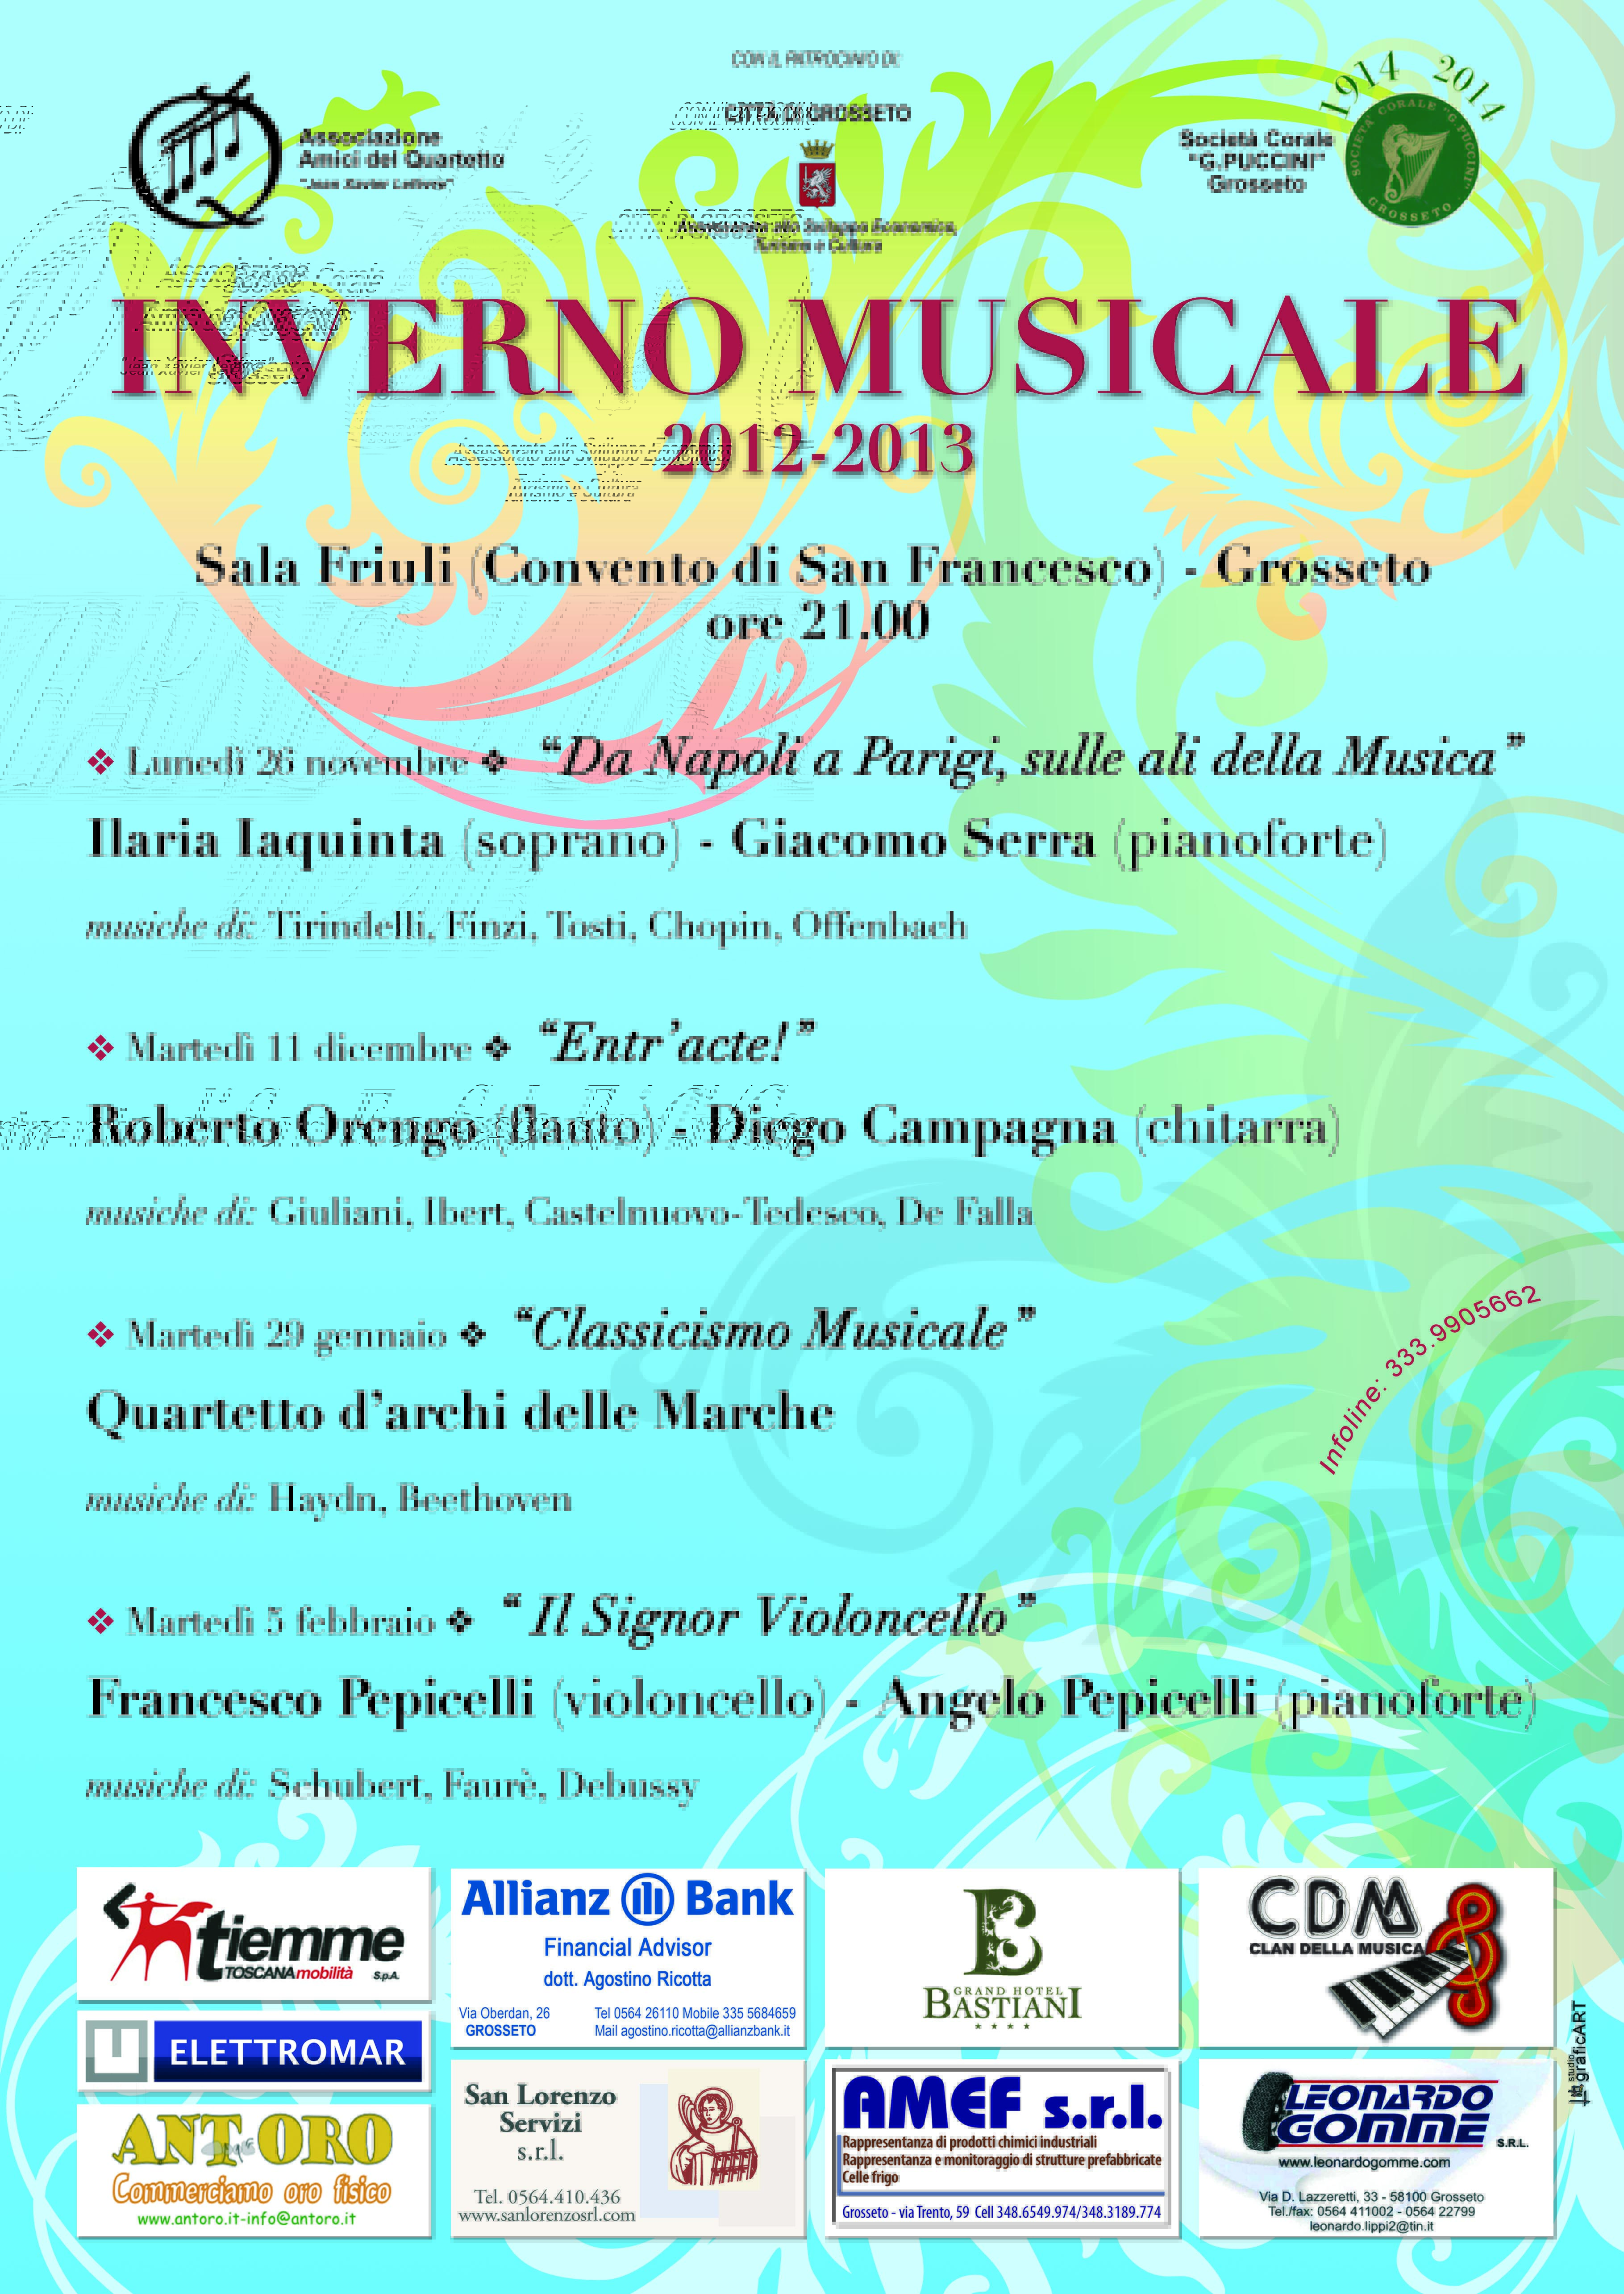 Rassegna “Inverno Musicale” – Ciclo di concerti organizzati dall’Associazione Amici del Quartetto e dalla Soc. Corale G.Puccini Grosseto